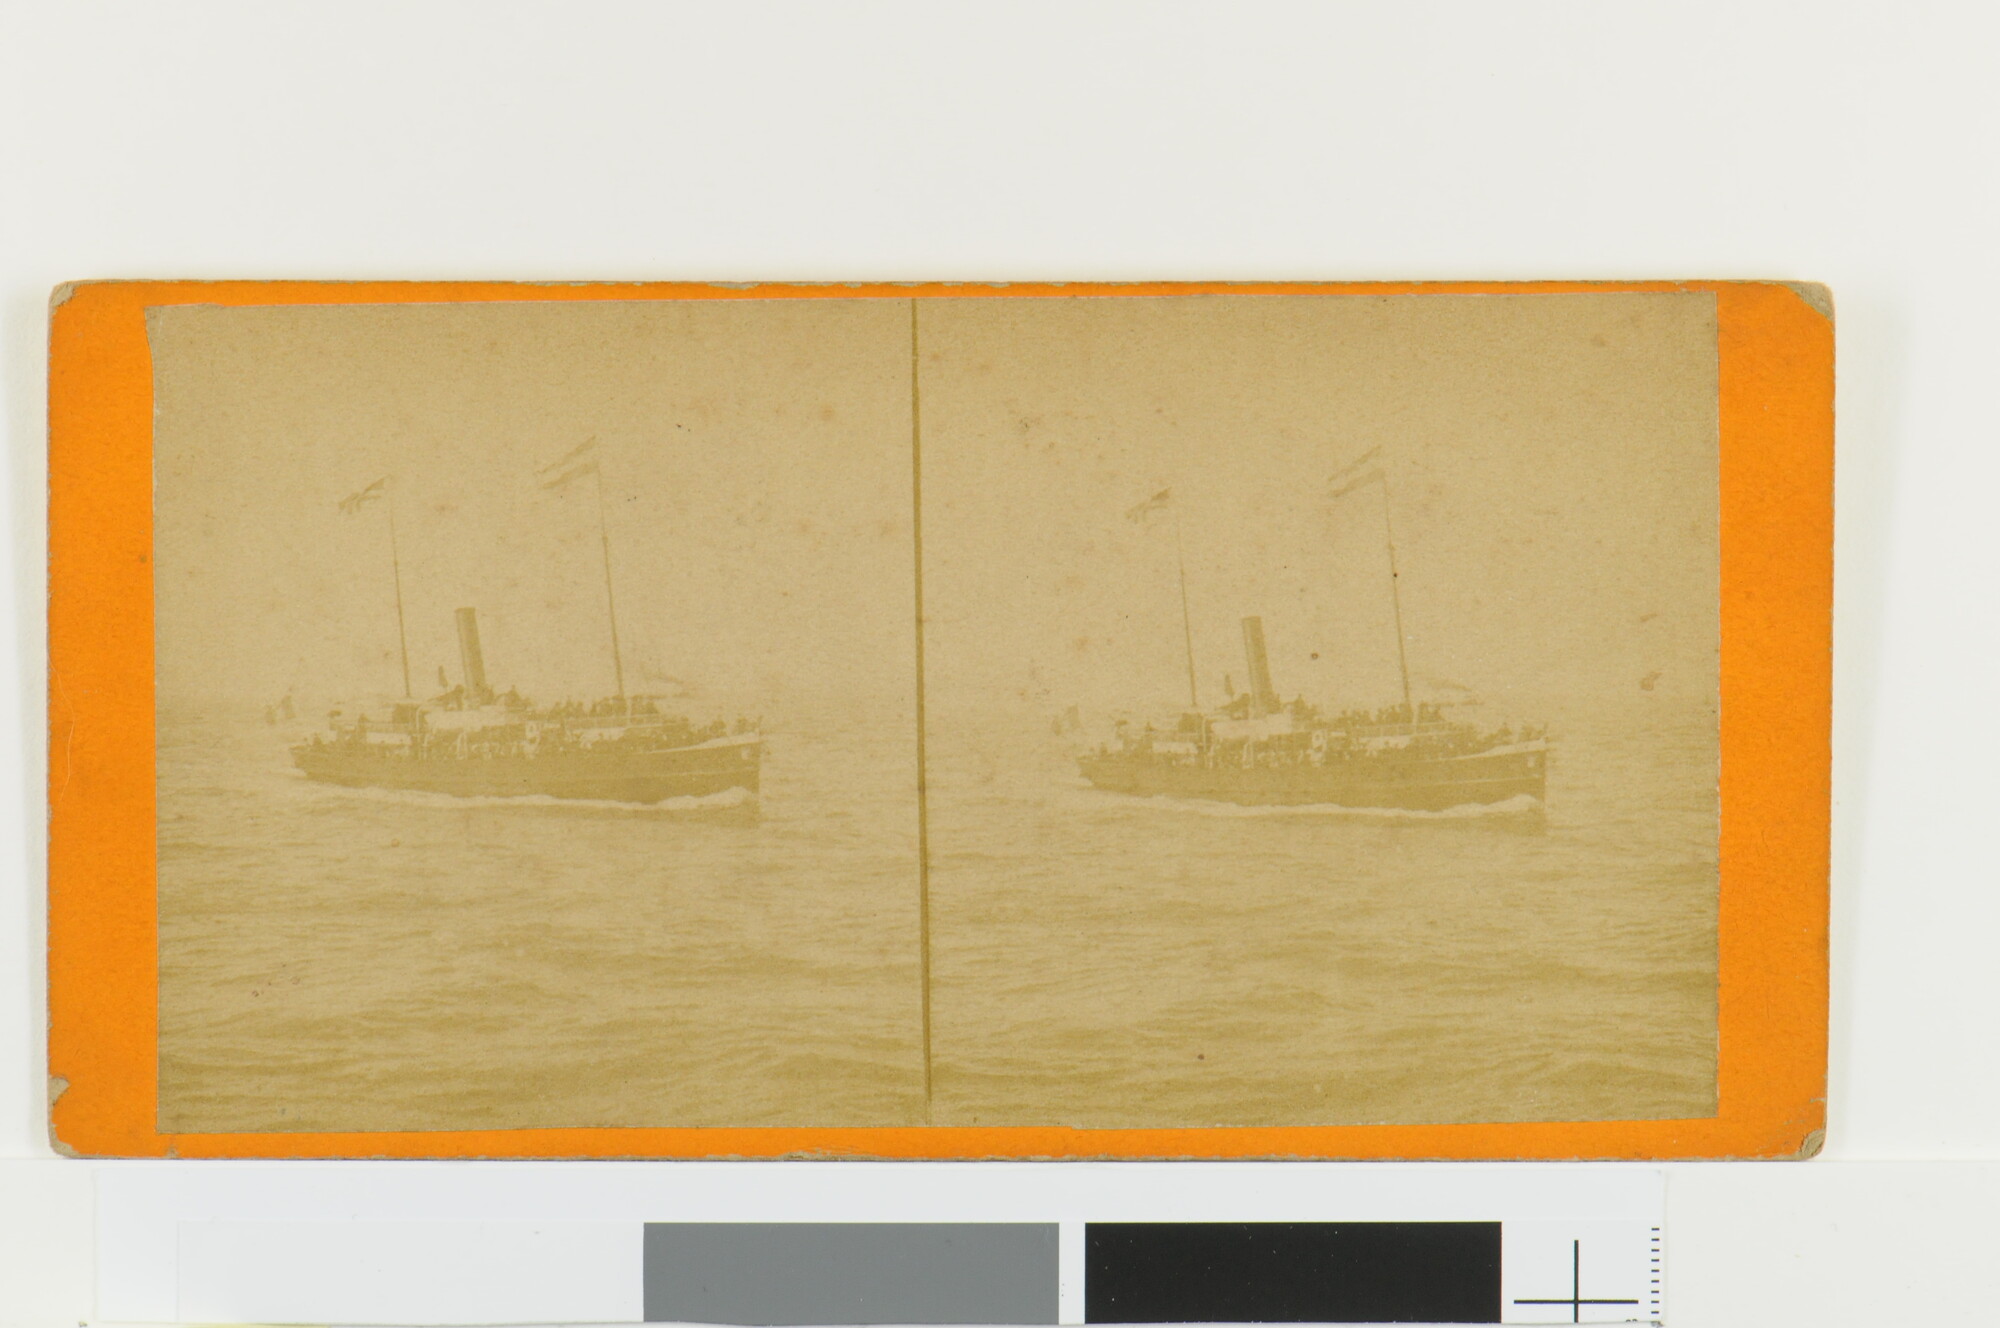 A.4485(02)07; Een stereofoto van een koopvaardijschip; foto